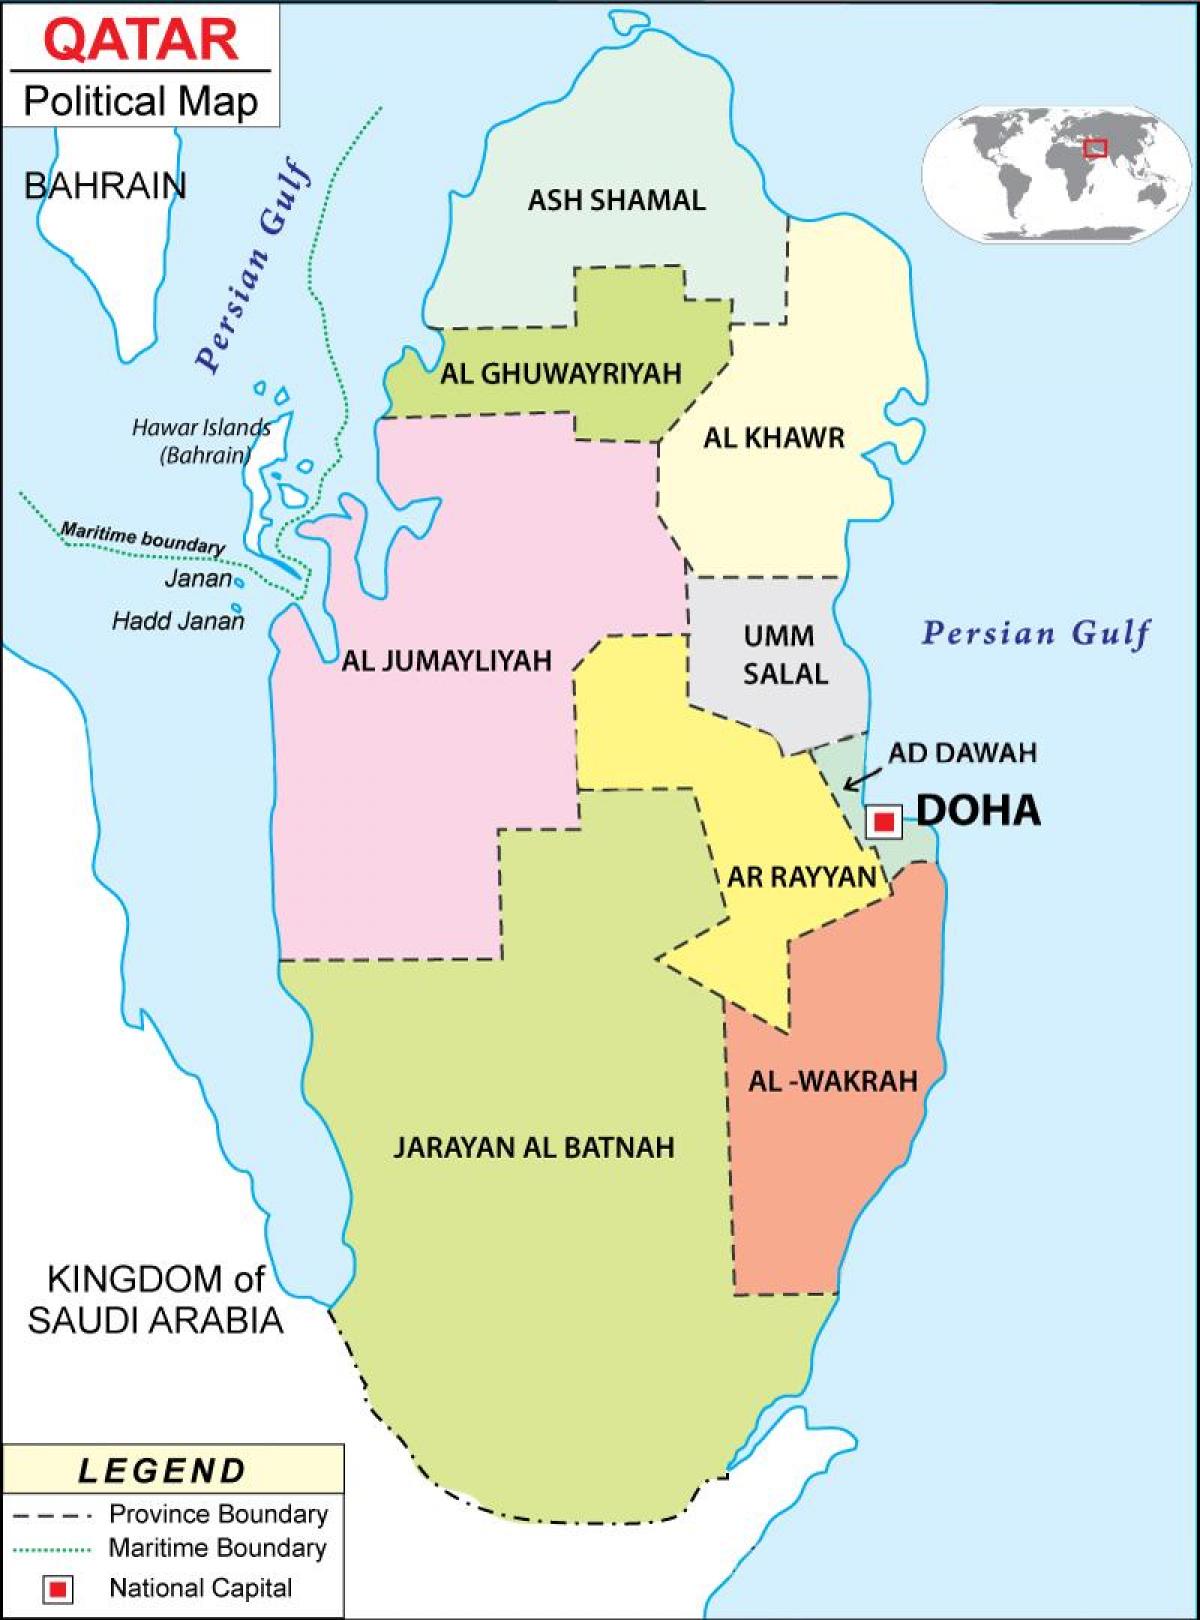 Qatar political map - Map of qatar region (Western Asia - Asia)